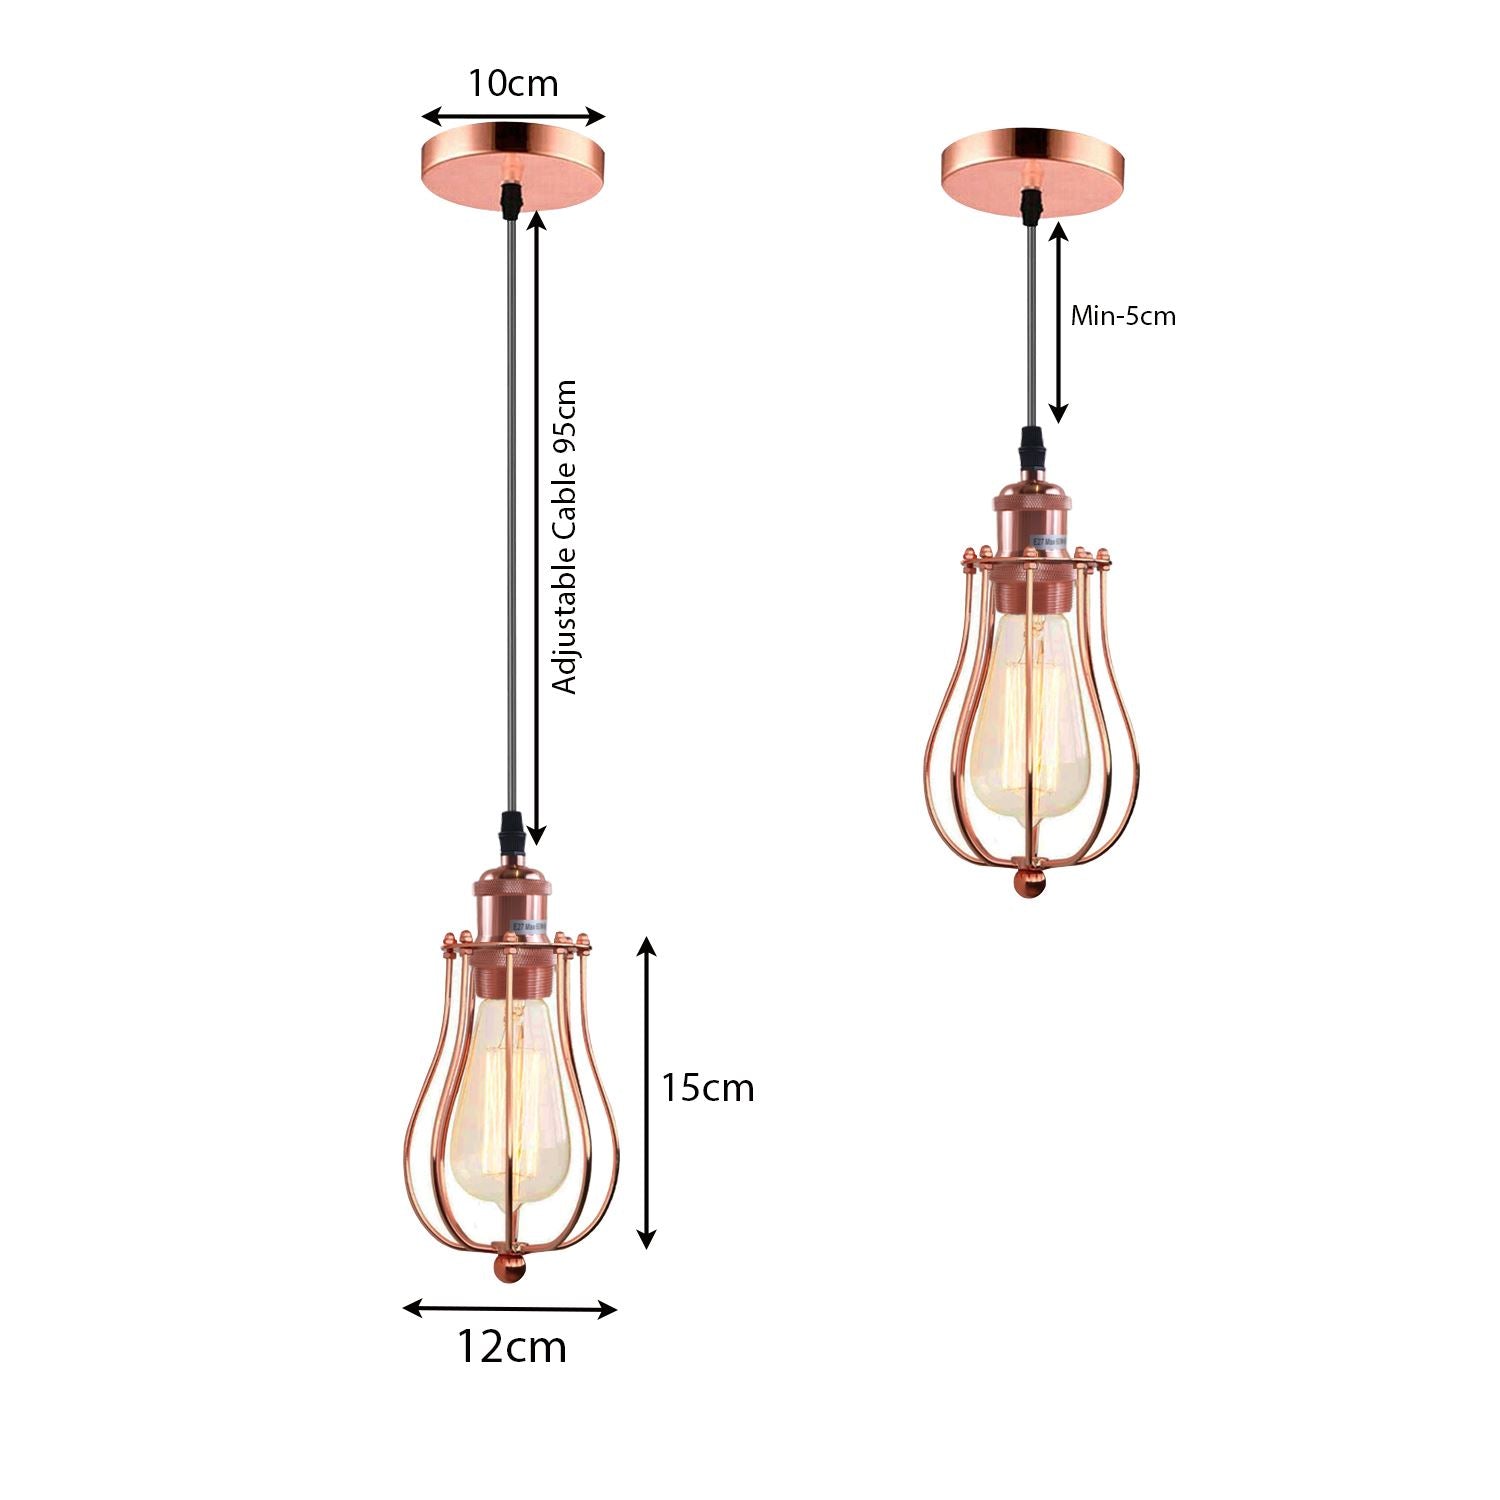 Ceiling Rose Balloon Cage Hanging Pendant Lamp Holder Light Fitting Lighting Kit UK~1193 - LEDSone UK Ltd